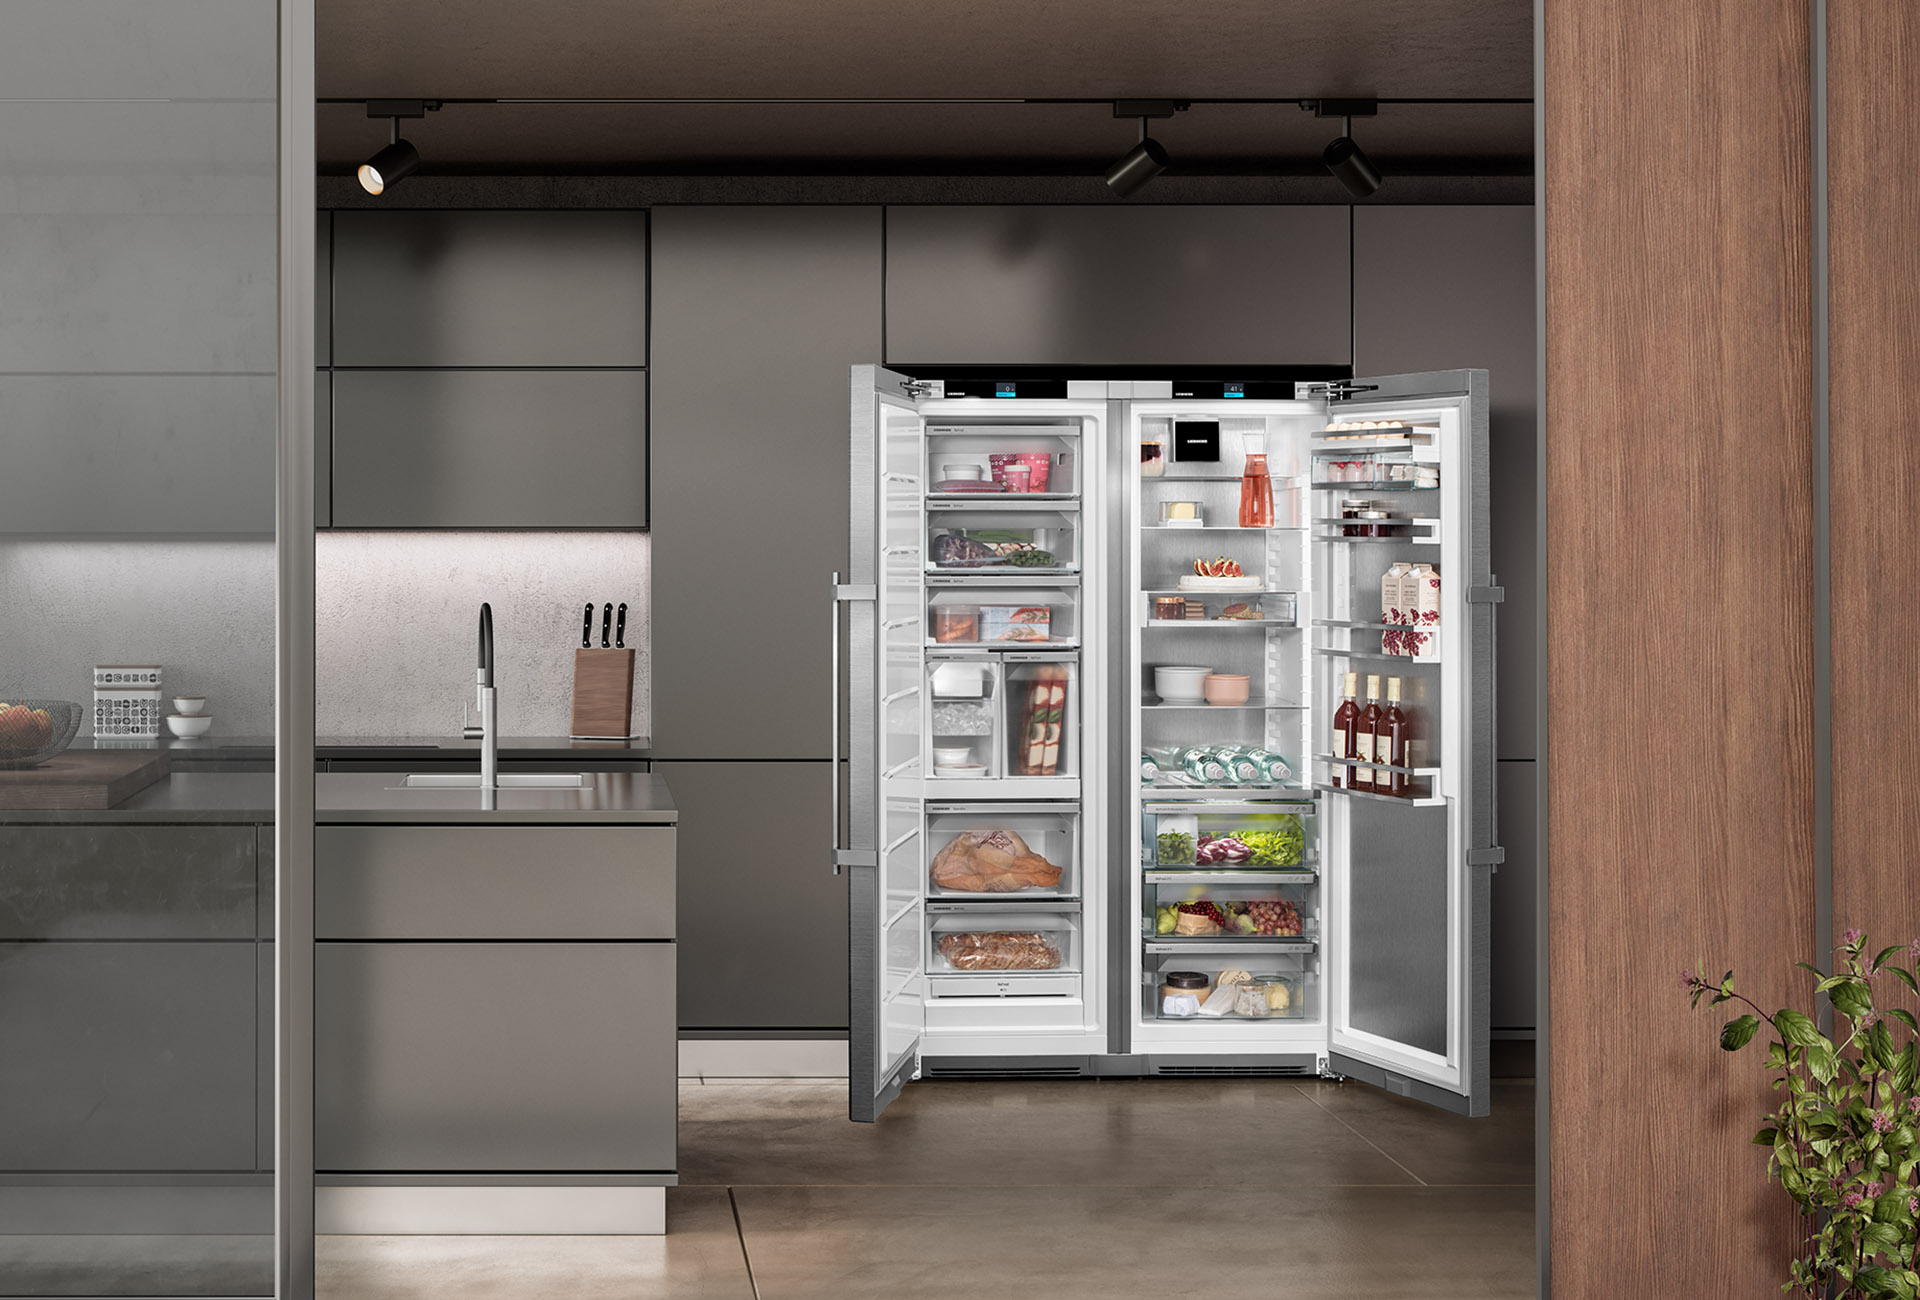 Réfrigérateurs 1 porte froid froid statique liebherr 55cm f, 4973160  LIEBHERR